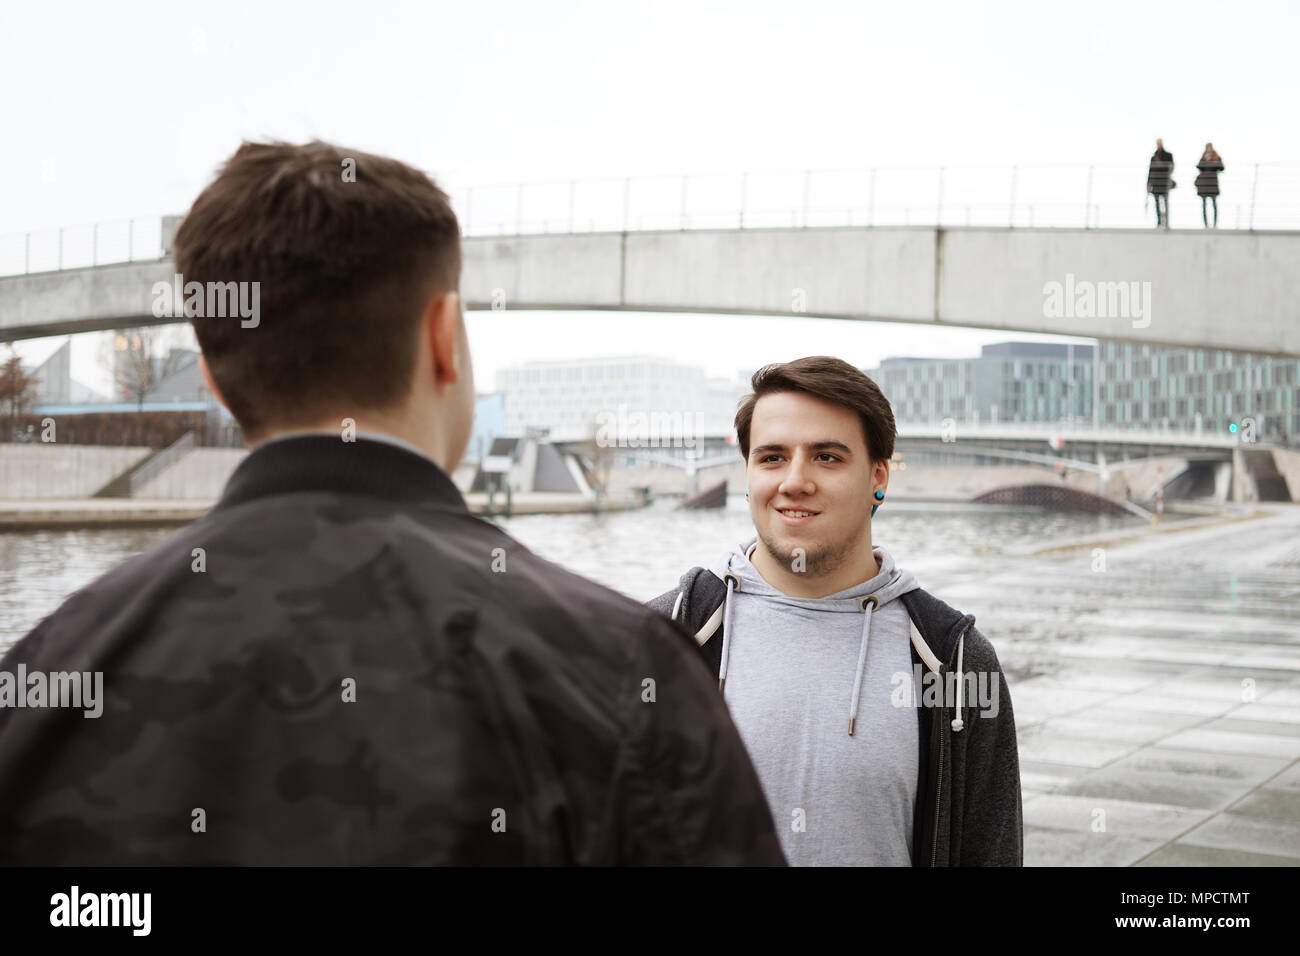 Zwei männliche Teenager Freunde ein Gespräch, Lifestyle oder City life Konzept, städtische Lage am Fluss in Berlin Deutschland Stockfoto